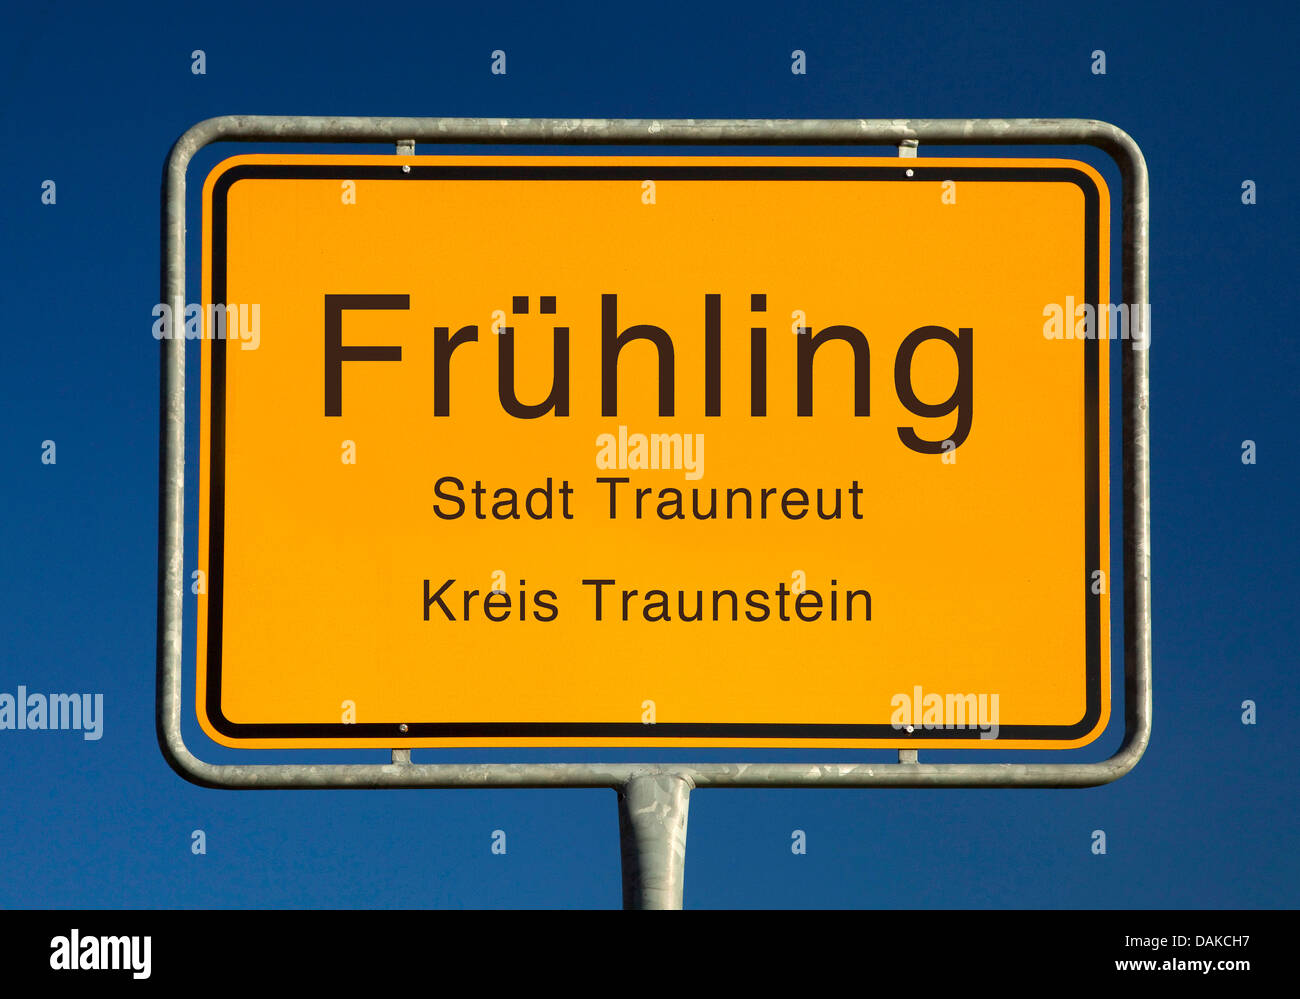 Fruehling Ort Namensschild, Fruehling, Kreis Traunstein, Bayern,  Deutschland Stockfotografie - Alamy